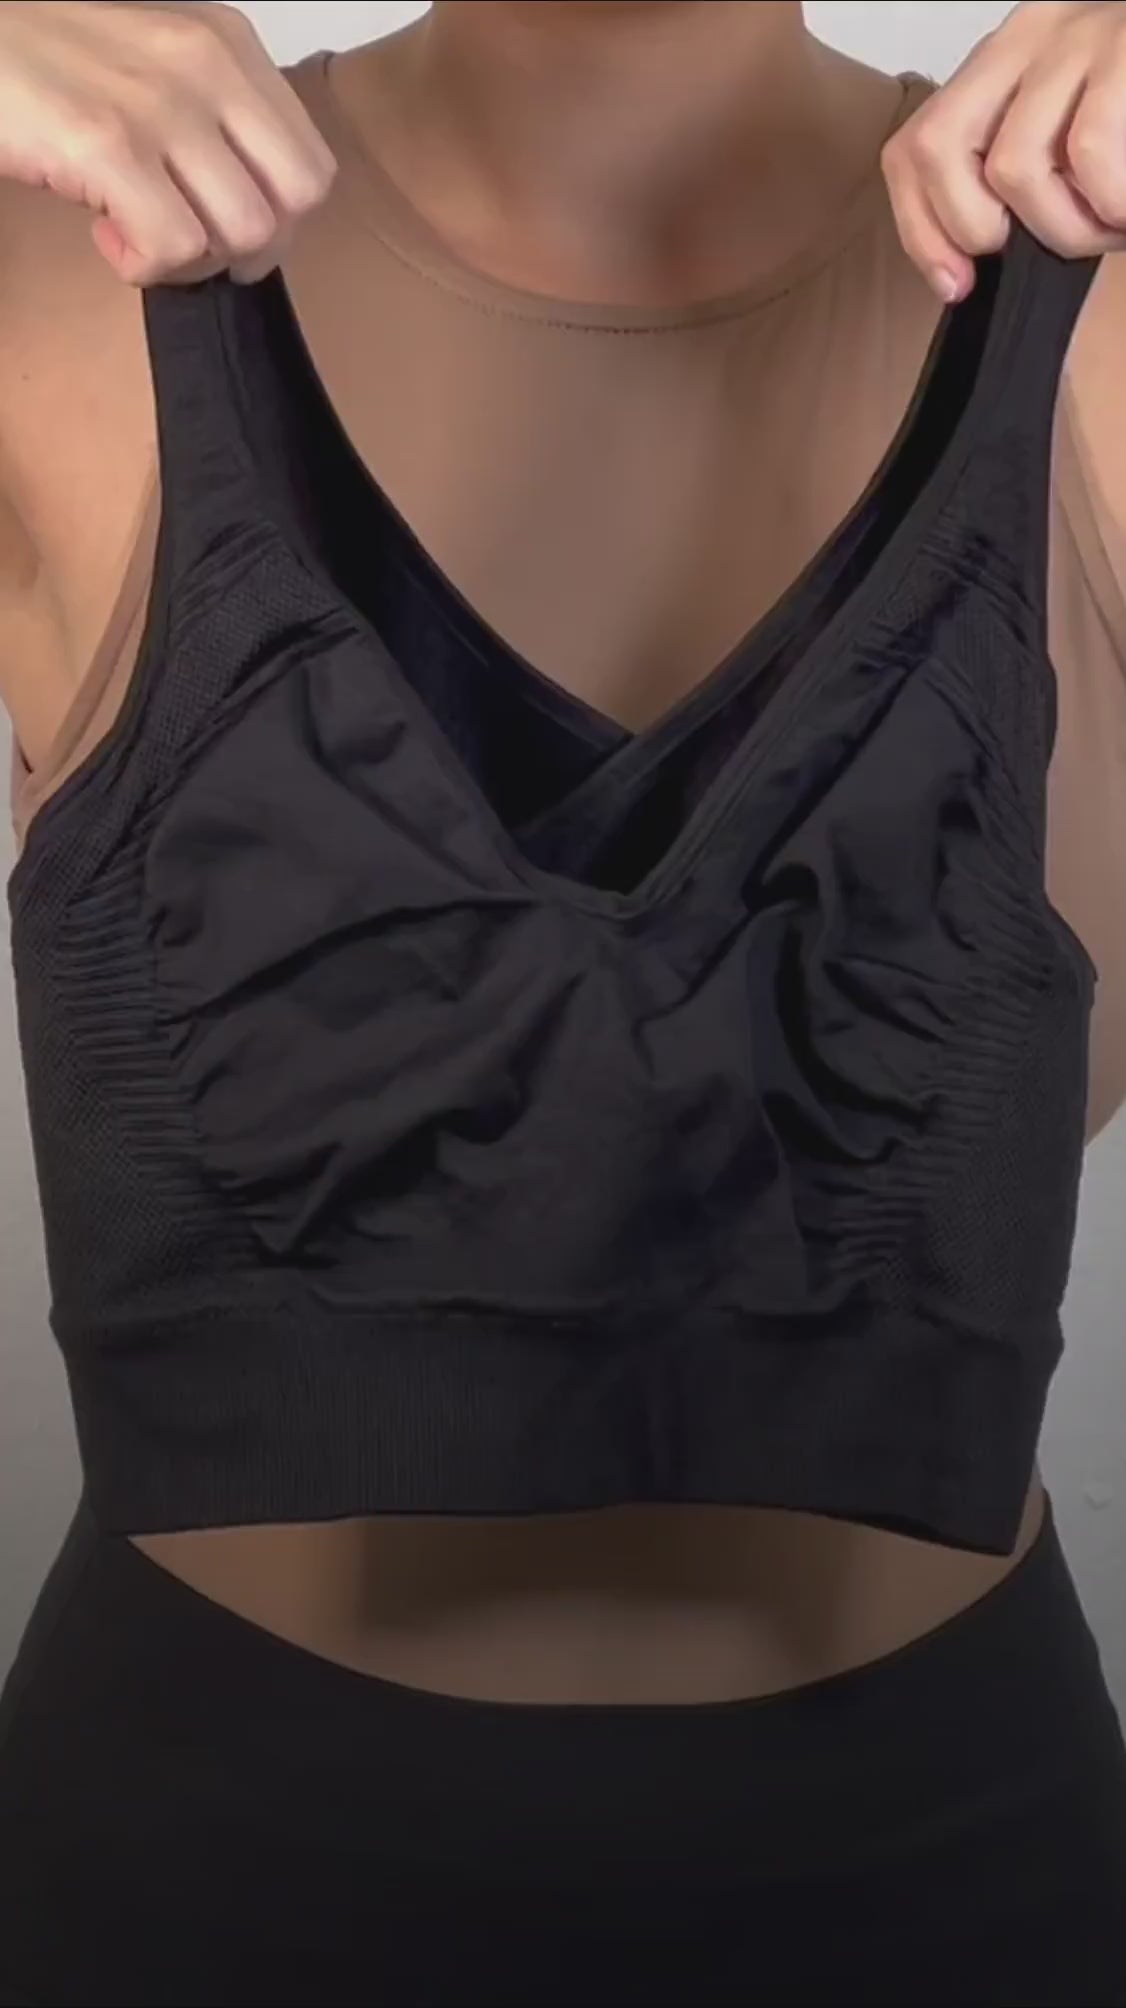 Women's bras Compression bra BRAEEZ 7 Wonders Support bra CURVEEZ